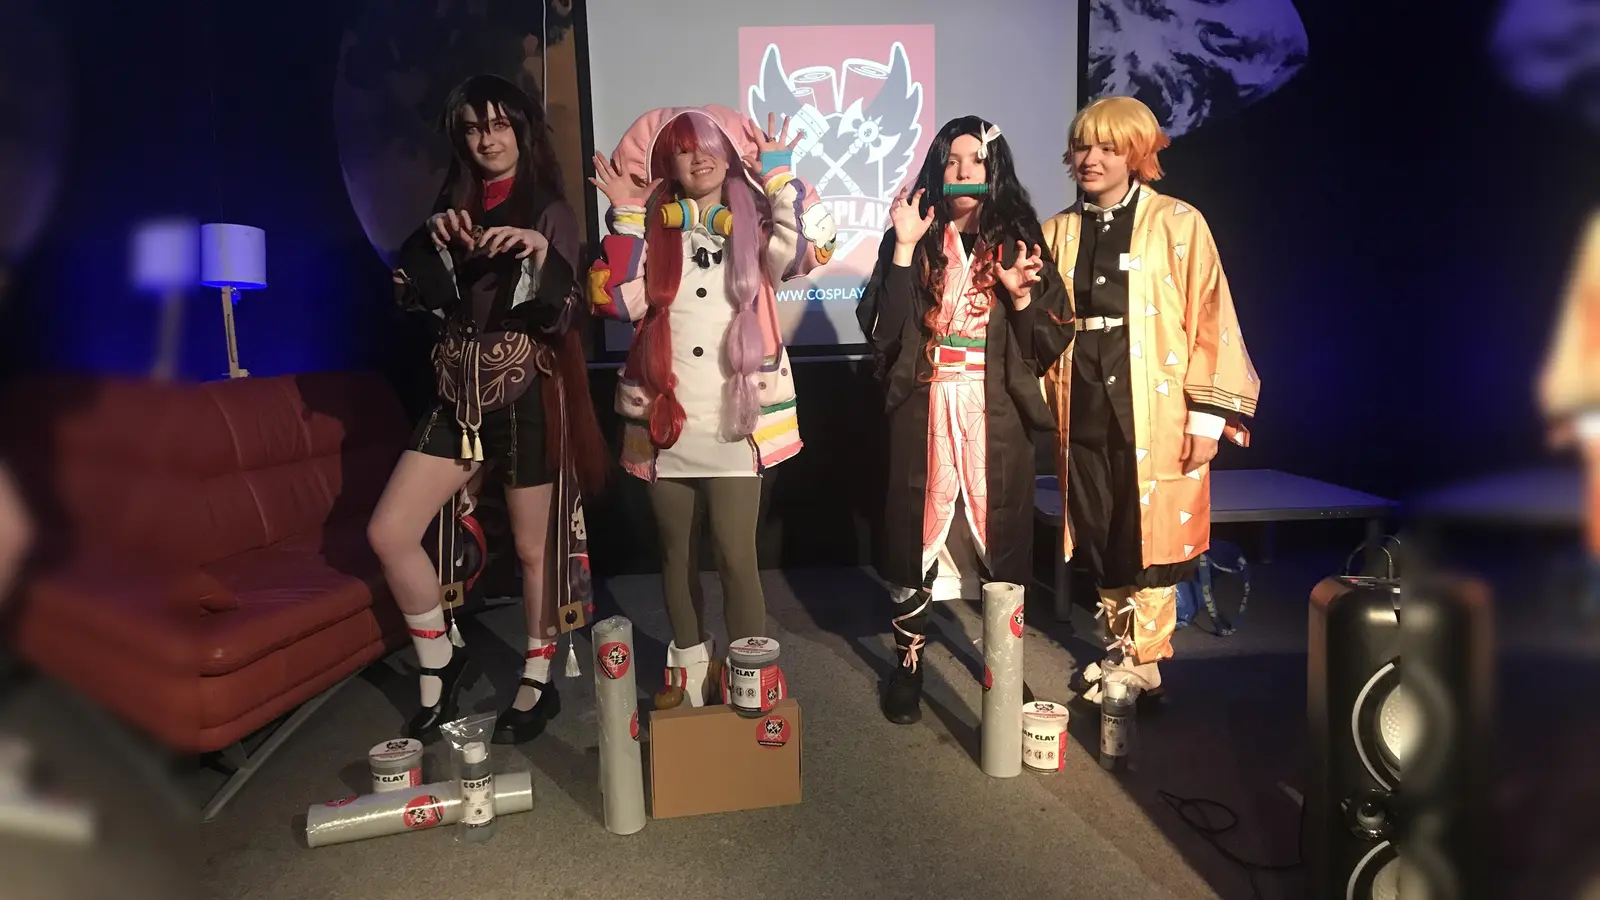 Die Siegerinnen des Cosplay-Wettbewerbs (v.l.): Platz 2 – Celine als Hu Tao, Platz 1 - Melanie als Uta und Platz 3 – Tamaki und Lunesser als Zenitsu und Nezuko. (Foto: Stadt Höxter)